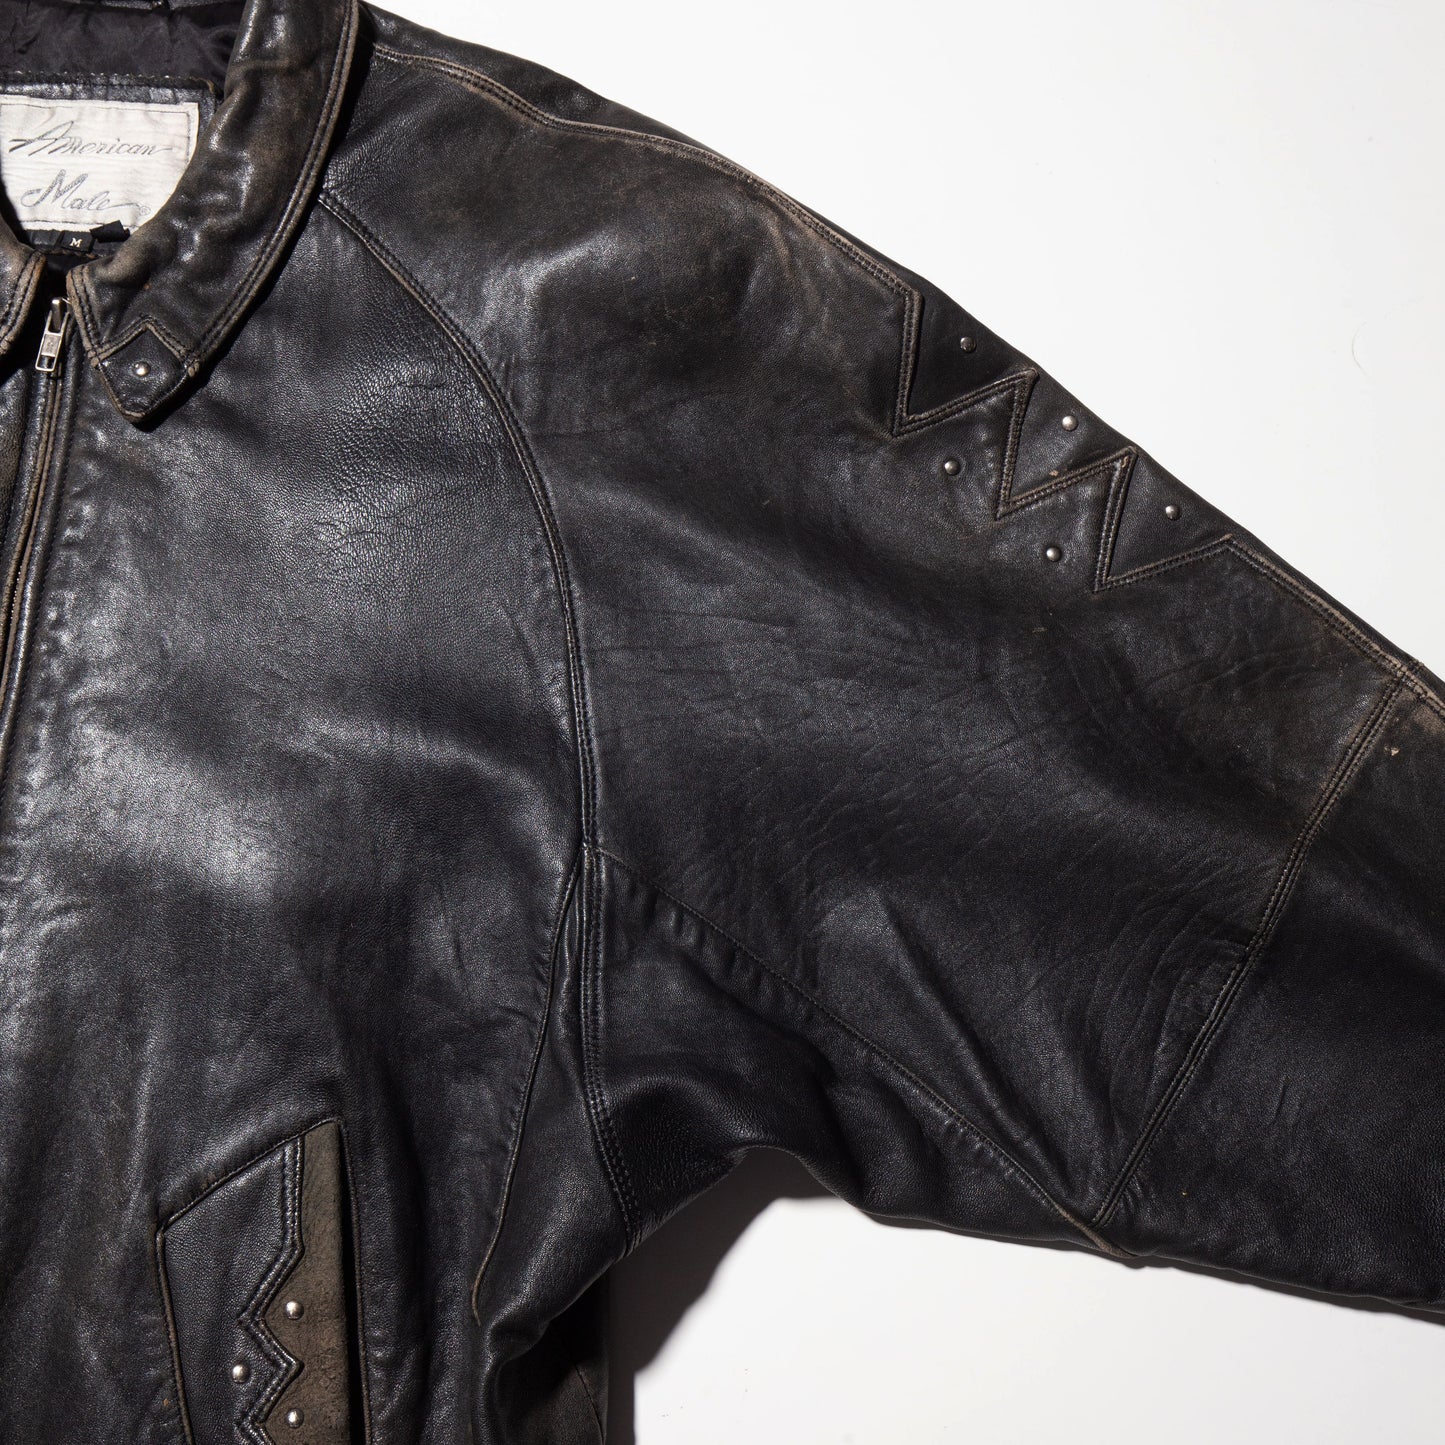 vintage studs fade leather jacket